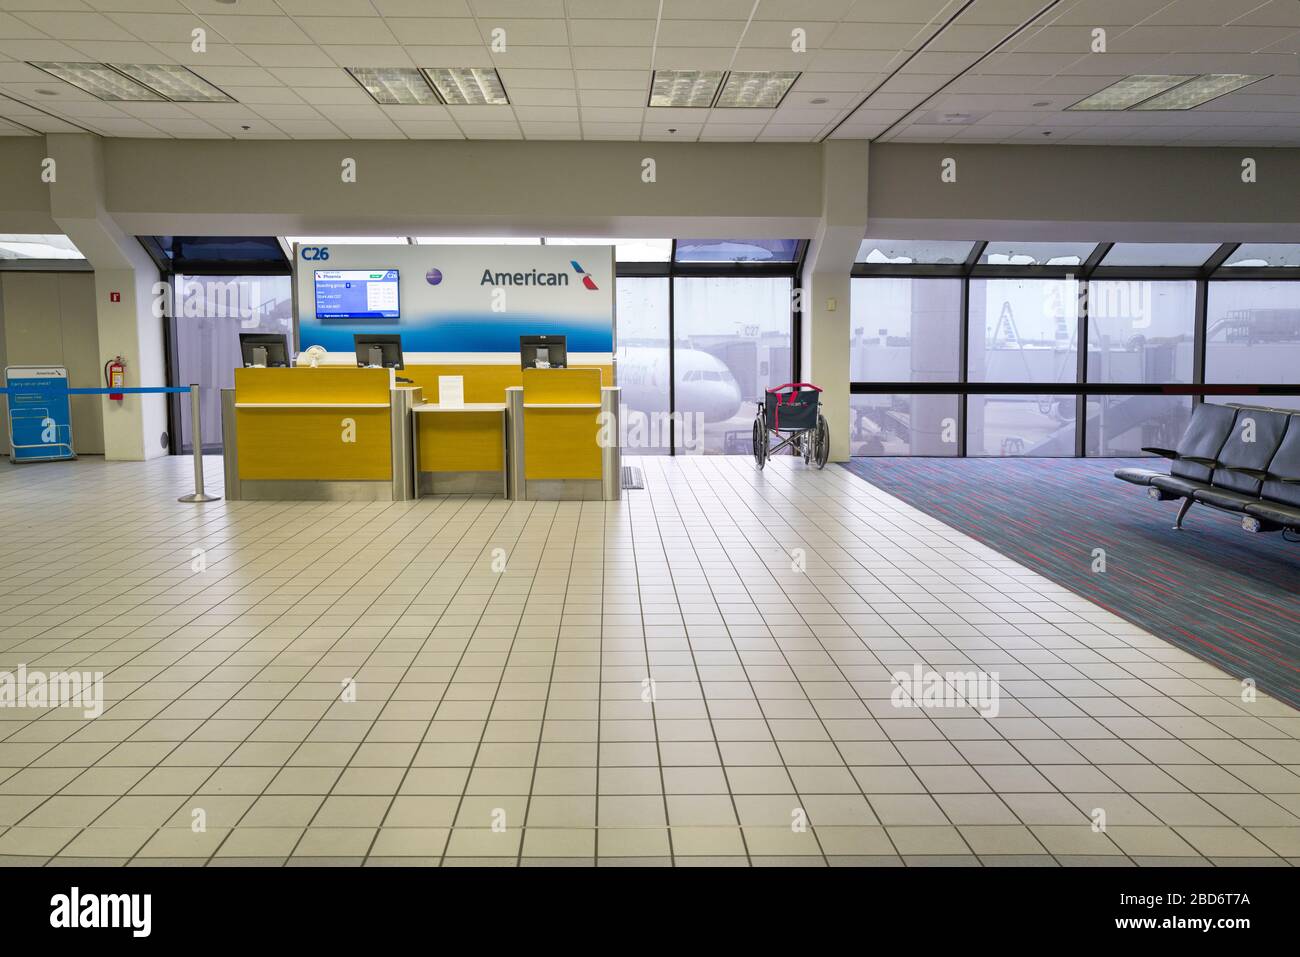 Aeroporto Internazionale Forth Worth di Dallas, il gate di arrivo/partenza di American Airlines è vuoto a causa delle cancellazioni pandemiche del Coronavirus COVID-19. Foto Stock